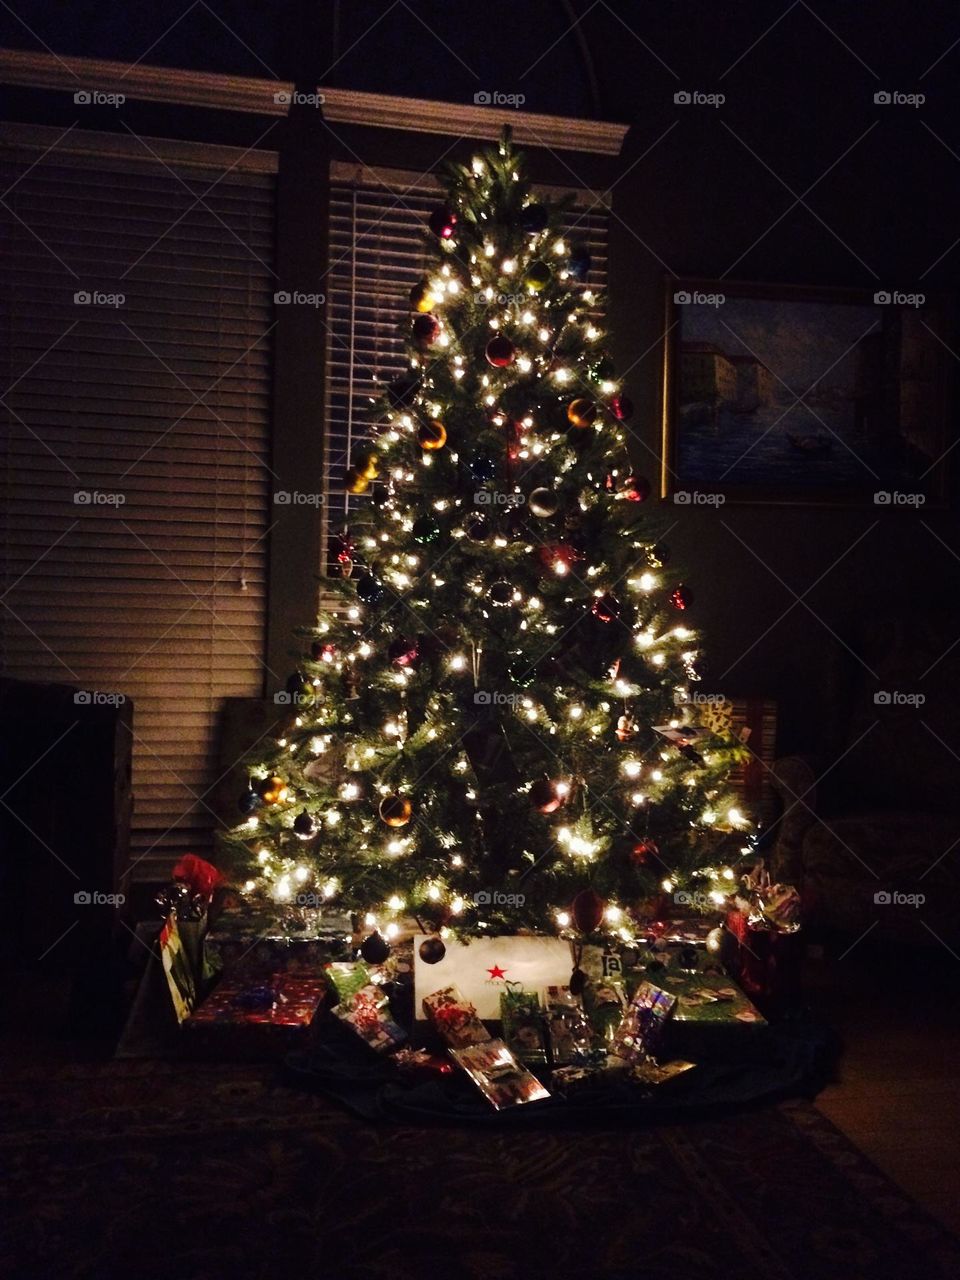 Christmas lights, Christmas tree, presents, holiday 